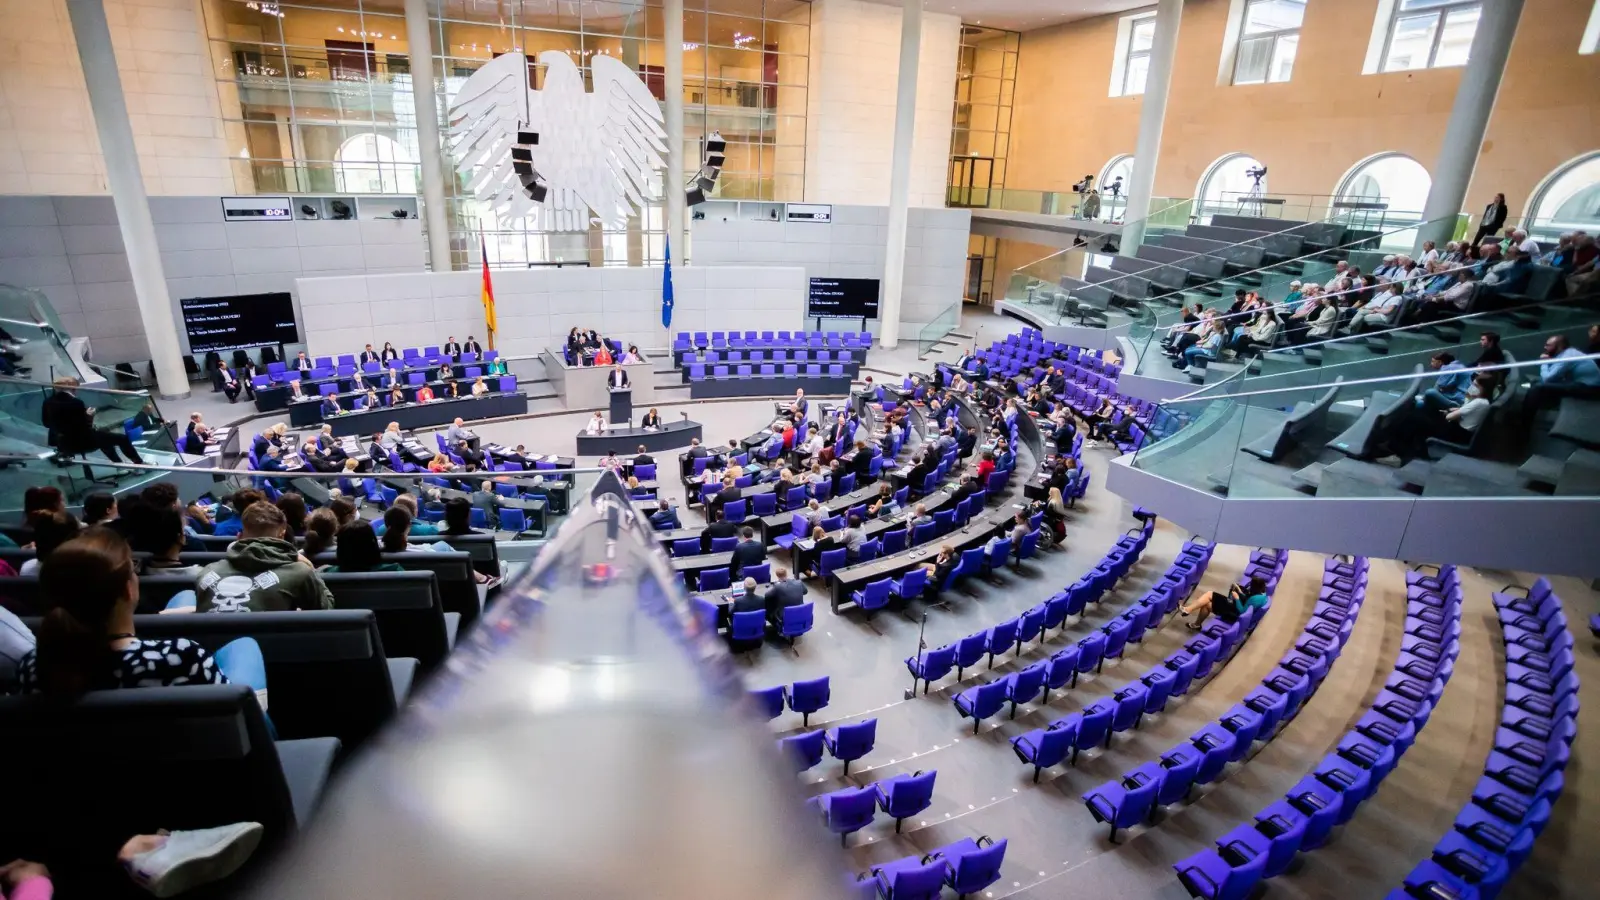 Die Abgeordneten des Deutschen Bundestages diskutierten heute über den Gesetzentwurf zur Abschaffung des Gesetzesparagrafen 219a, der das sogenannte Werbeverbot für Schwangerschaftsabbrüche regelt. (Foto: Christoph Soeder/dpa)